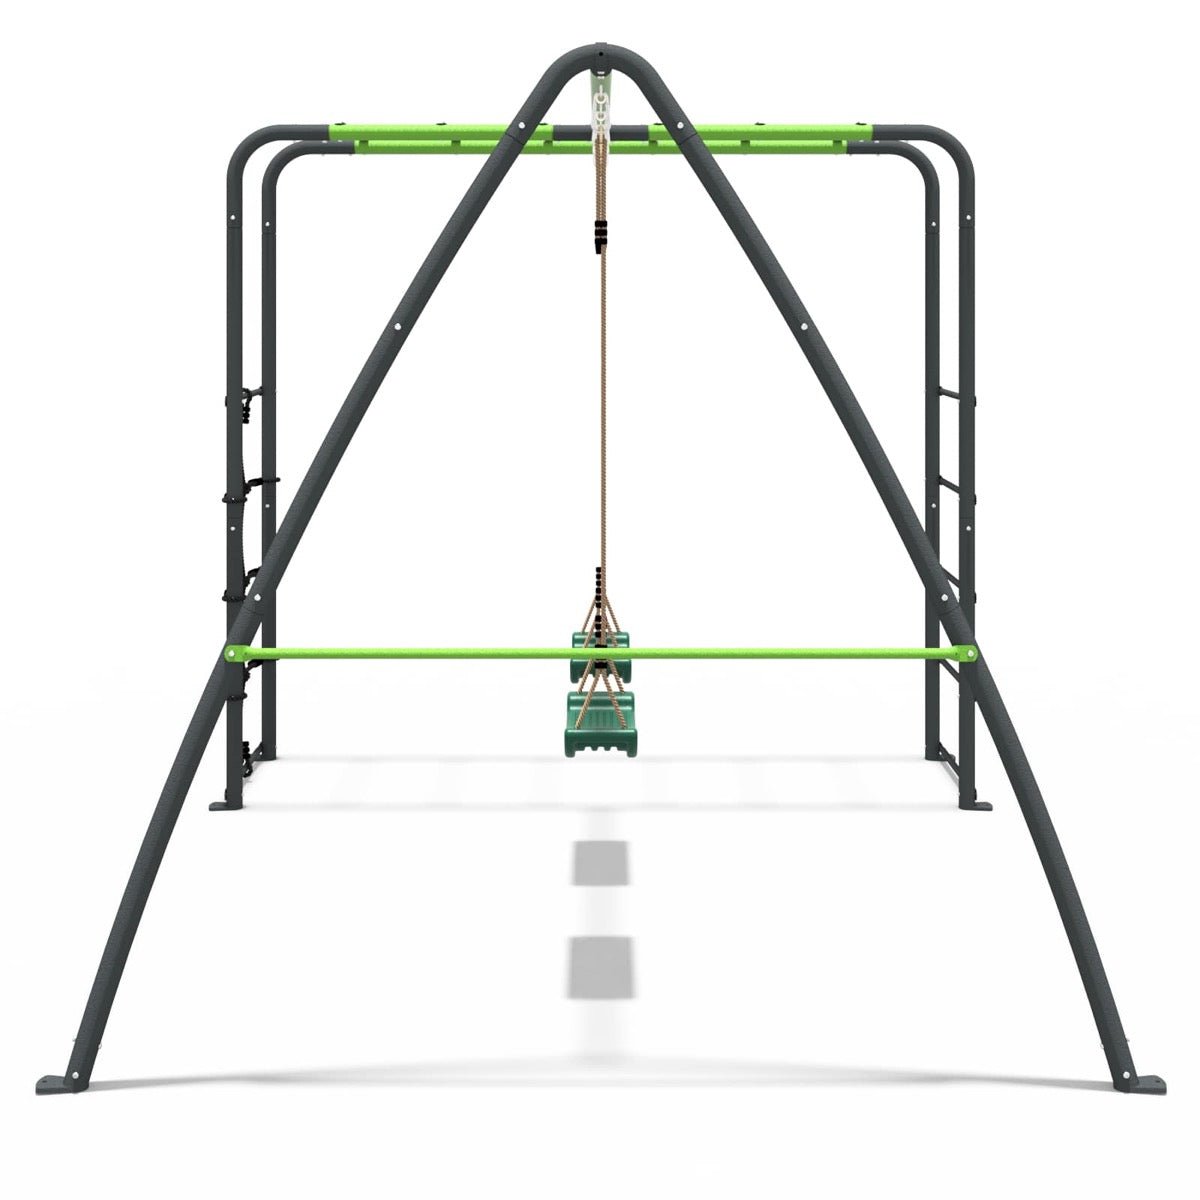 Rebo Steel Series Metal Swing Set with Monkey Bars - Double Swing Green